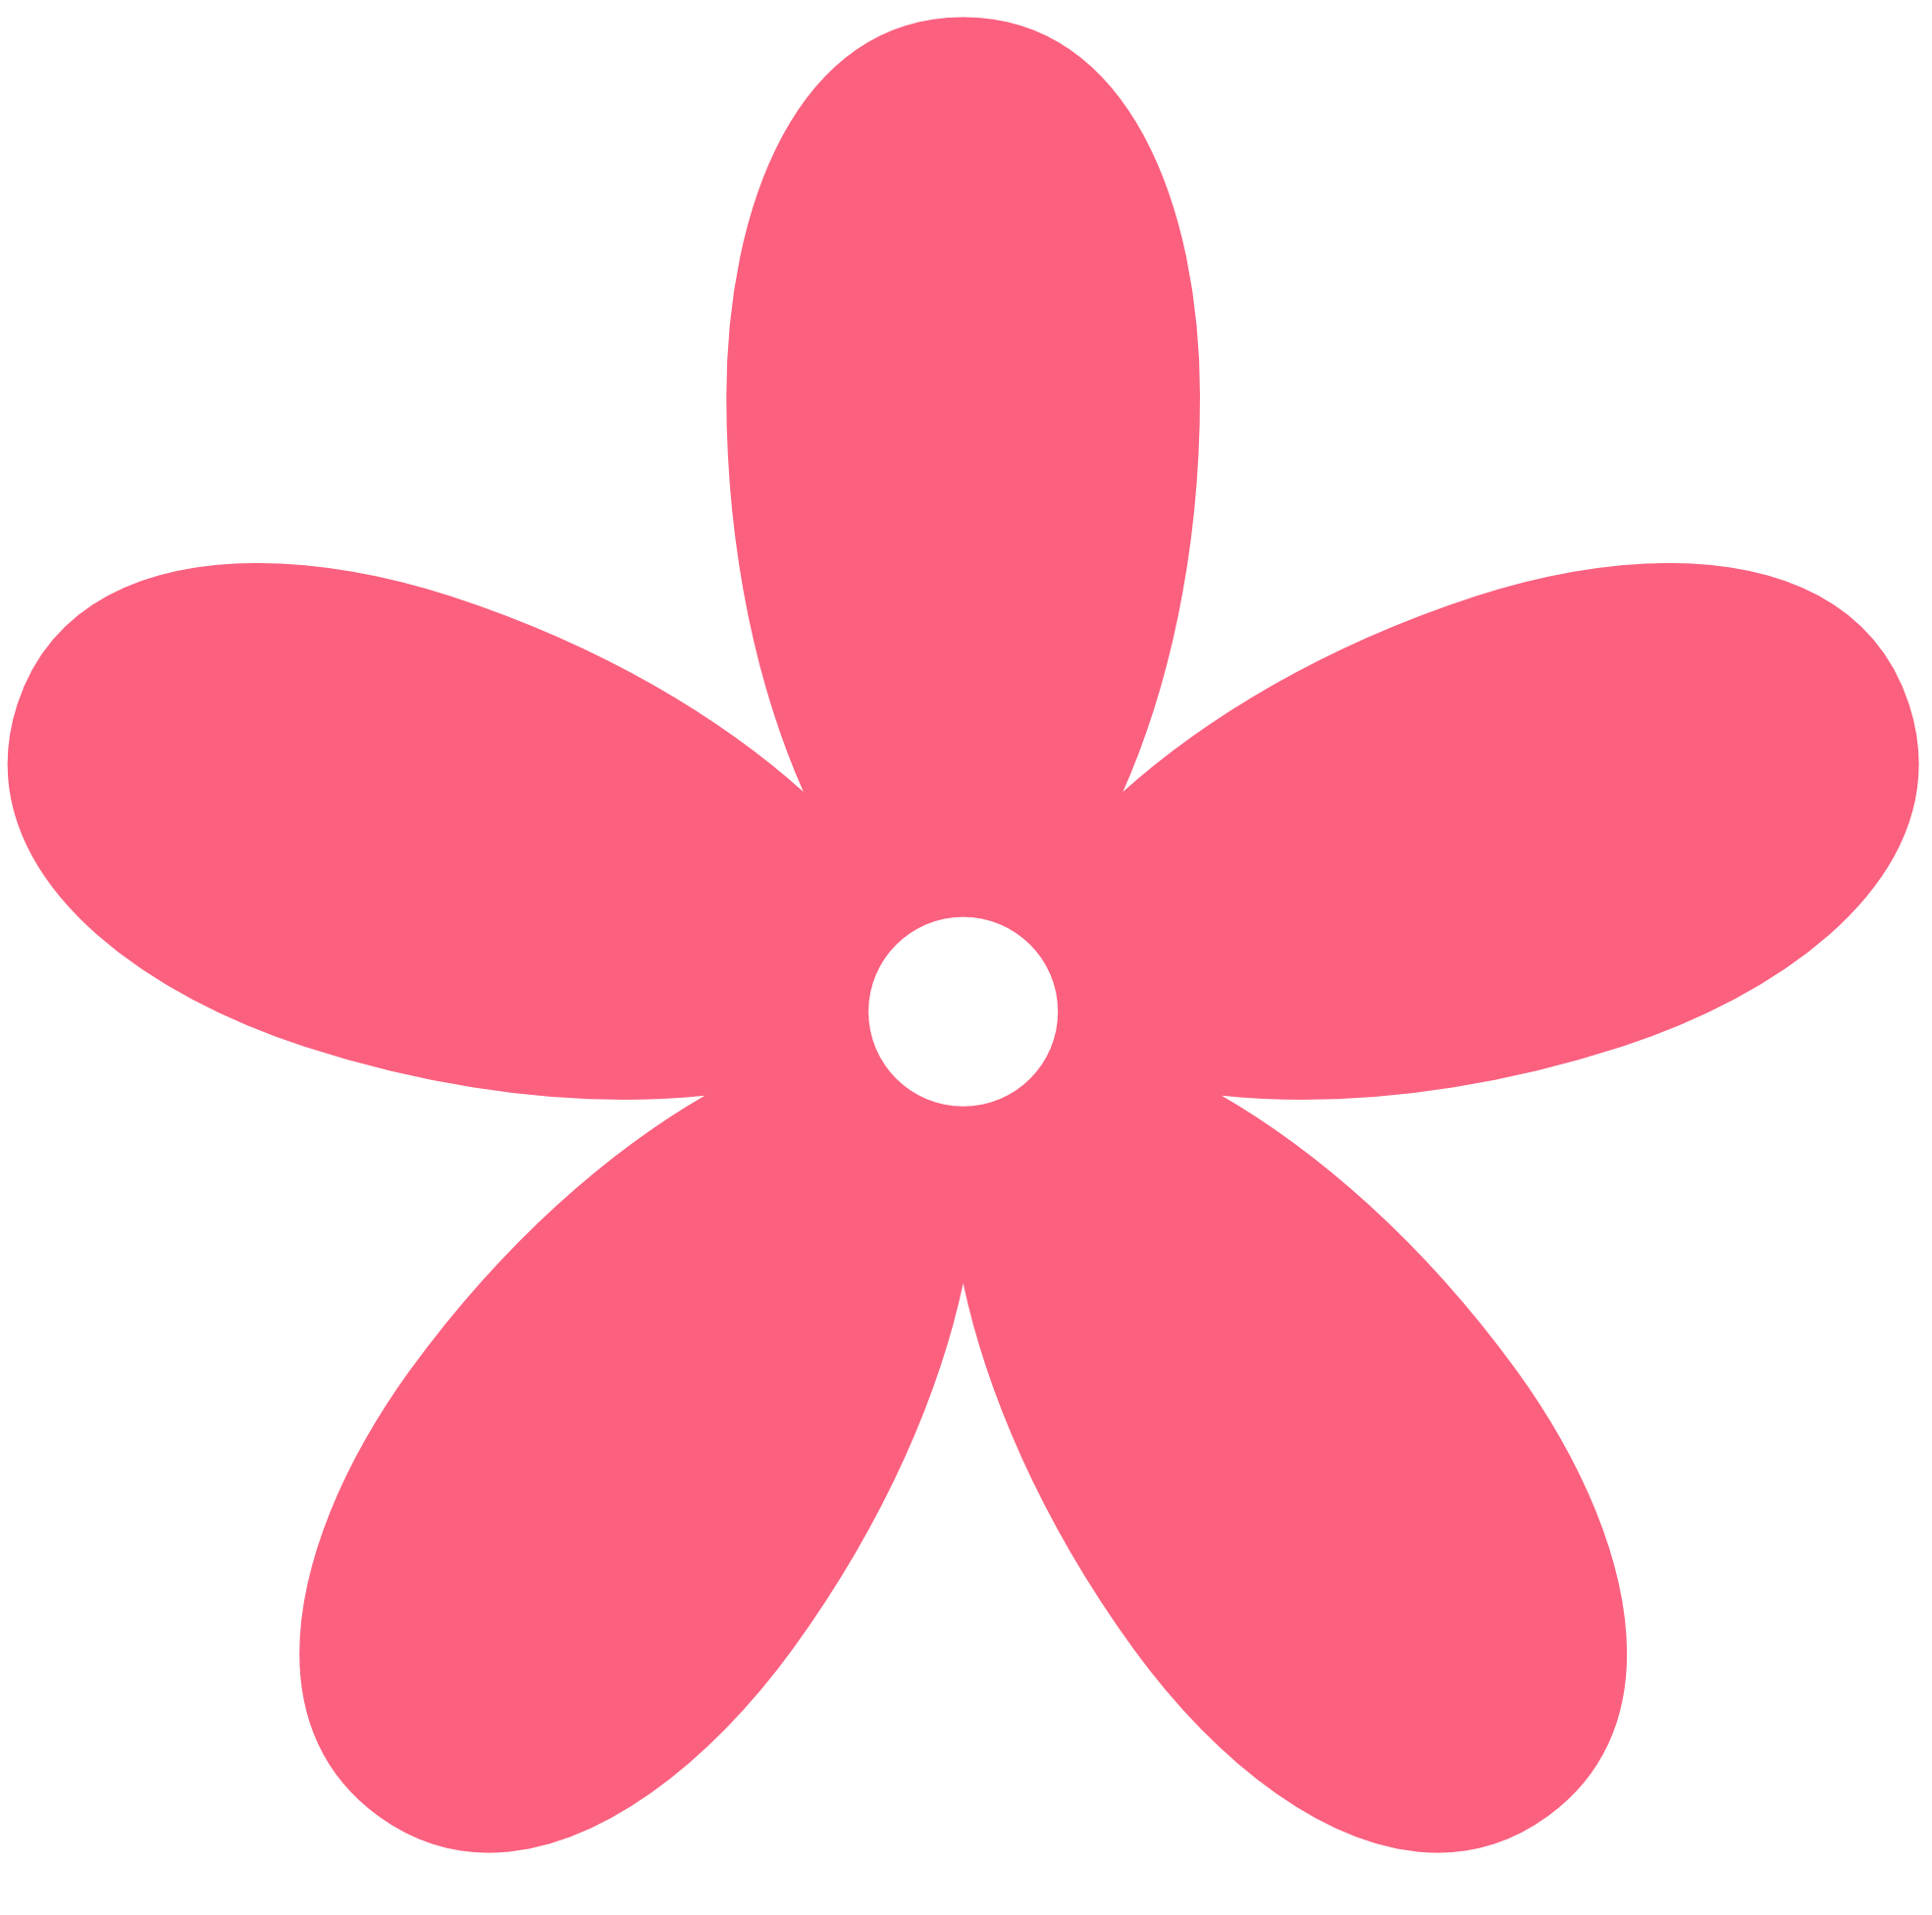 Cartoon Flower Clipart